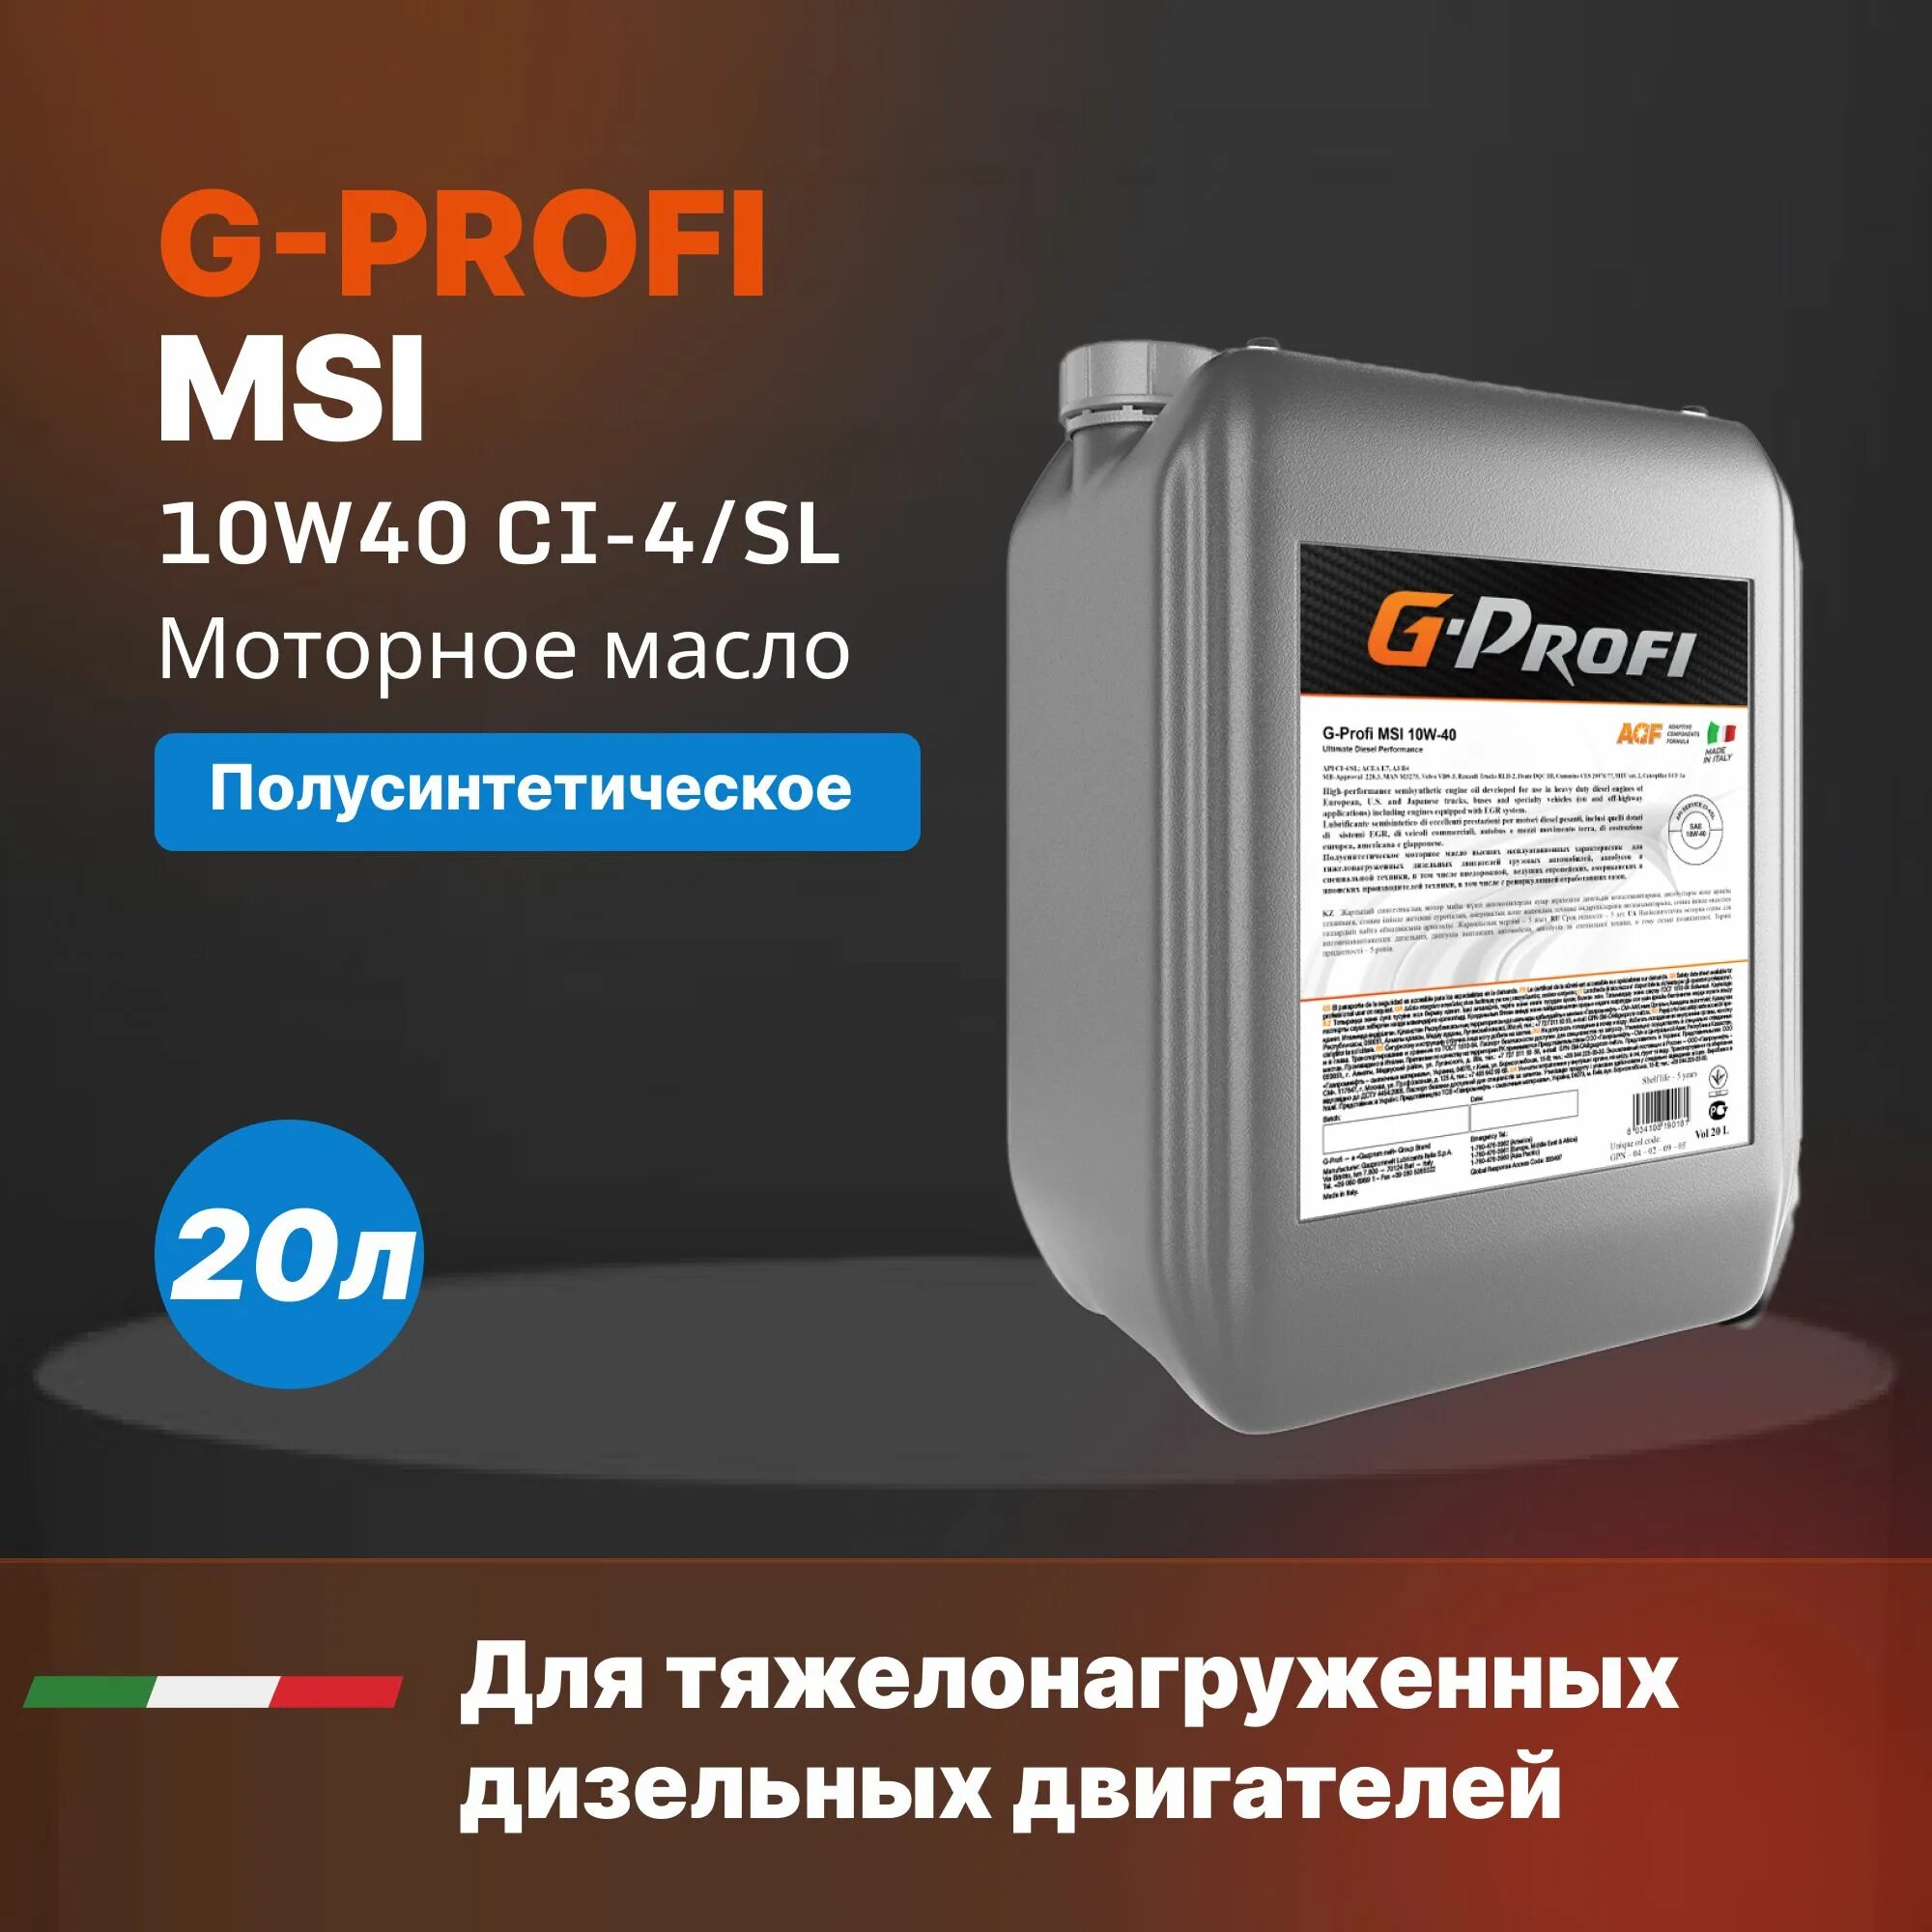 G Profi MSI 10w 40. G-Profi MSI 10w-40 205л. Масло g-Profi MSI 10w40 (205л/179 кг) весовой. G-Profi MSI 10w-40 20л. Моторное масло g profi 10w